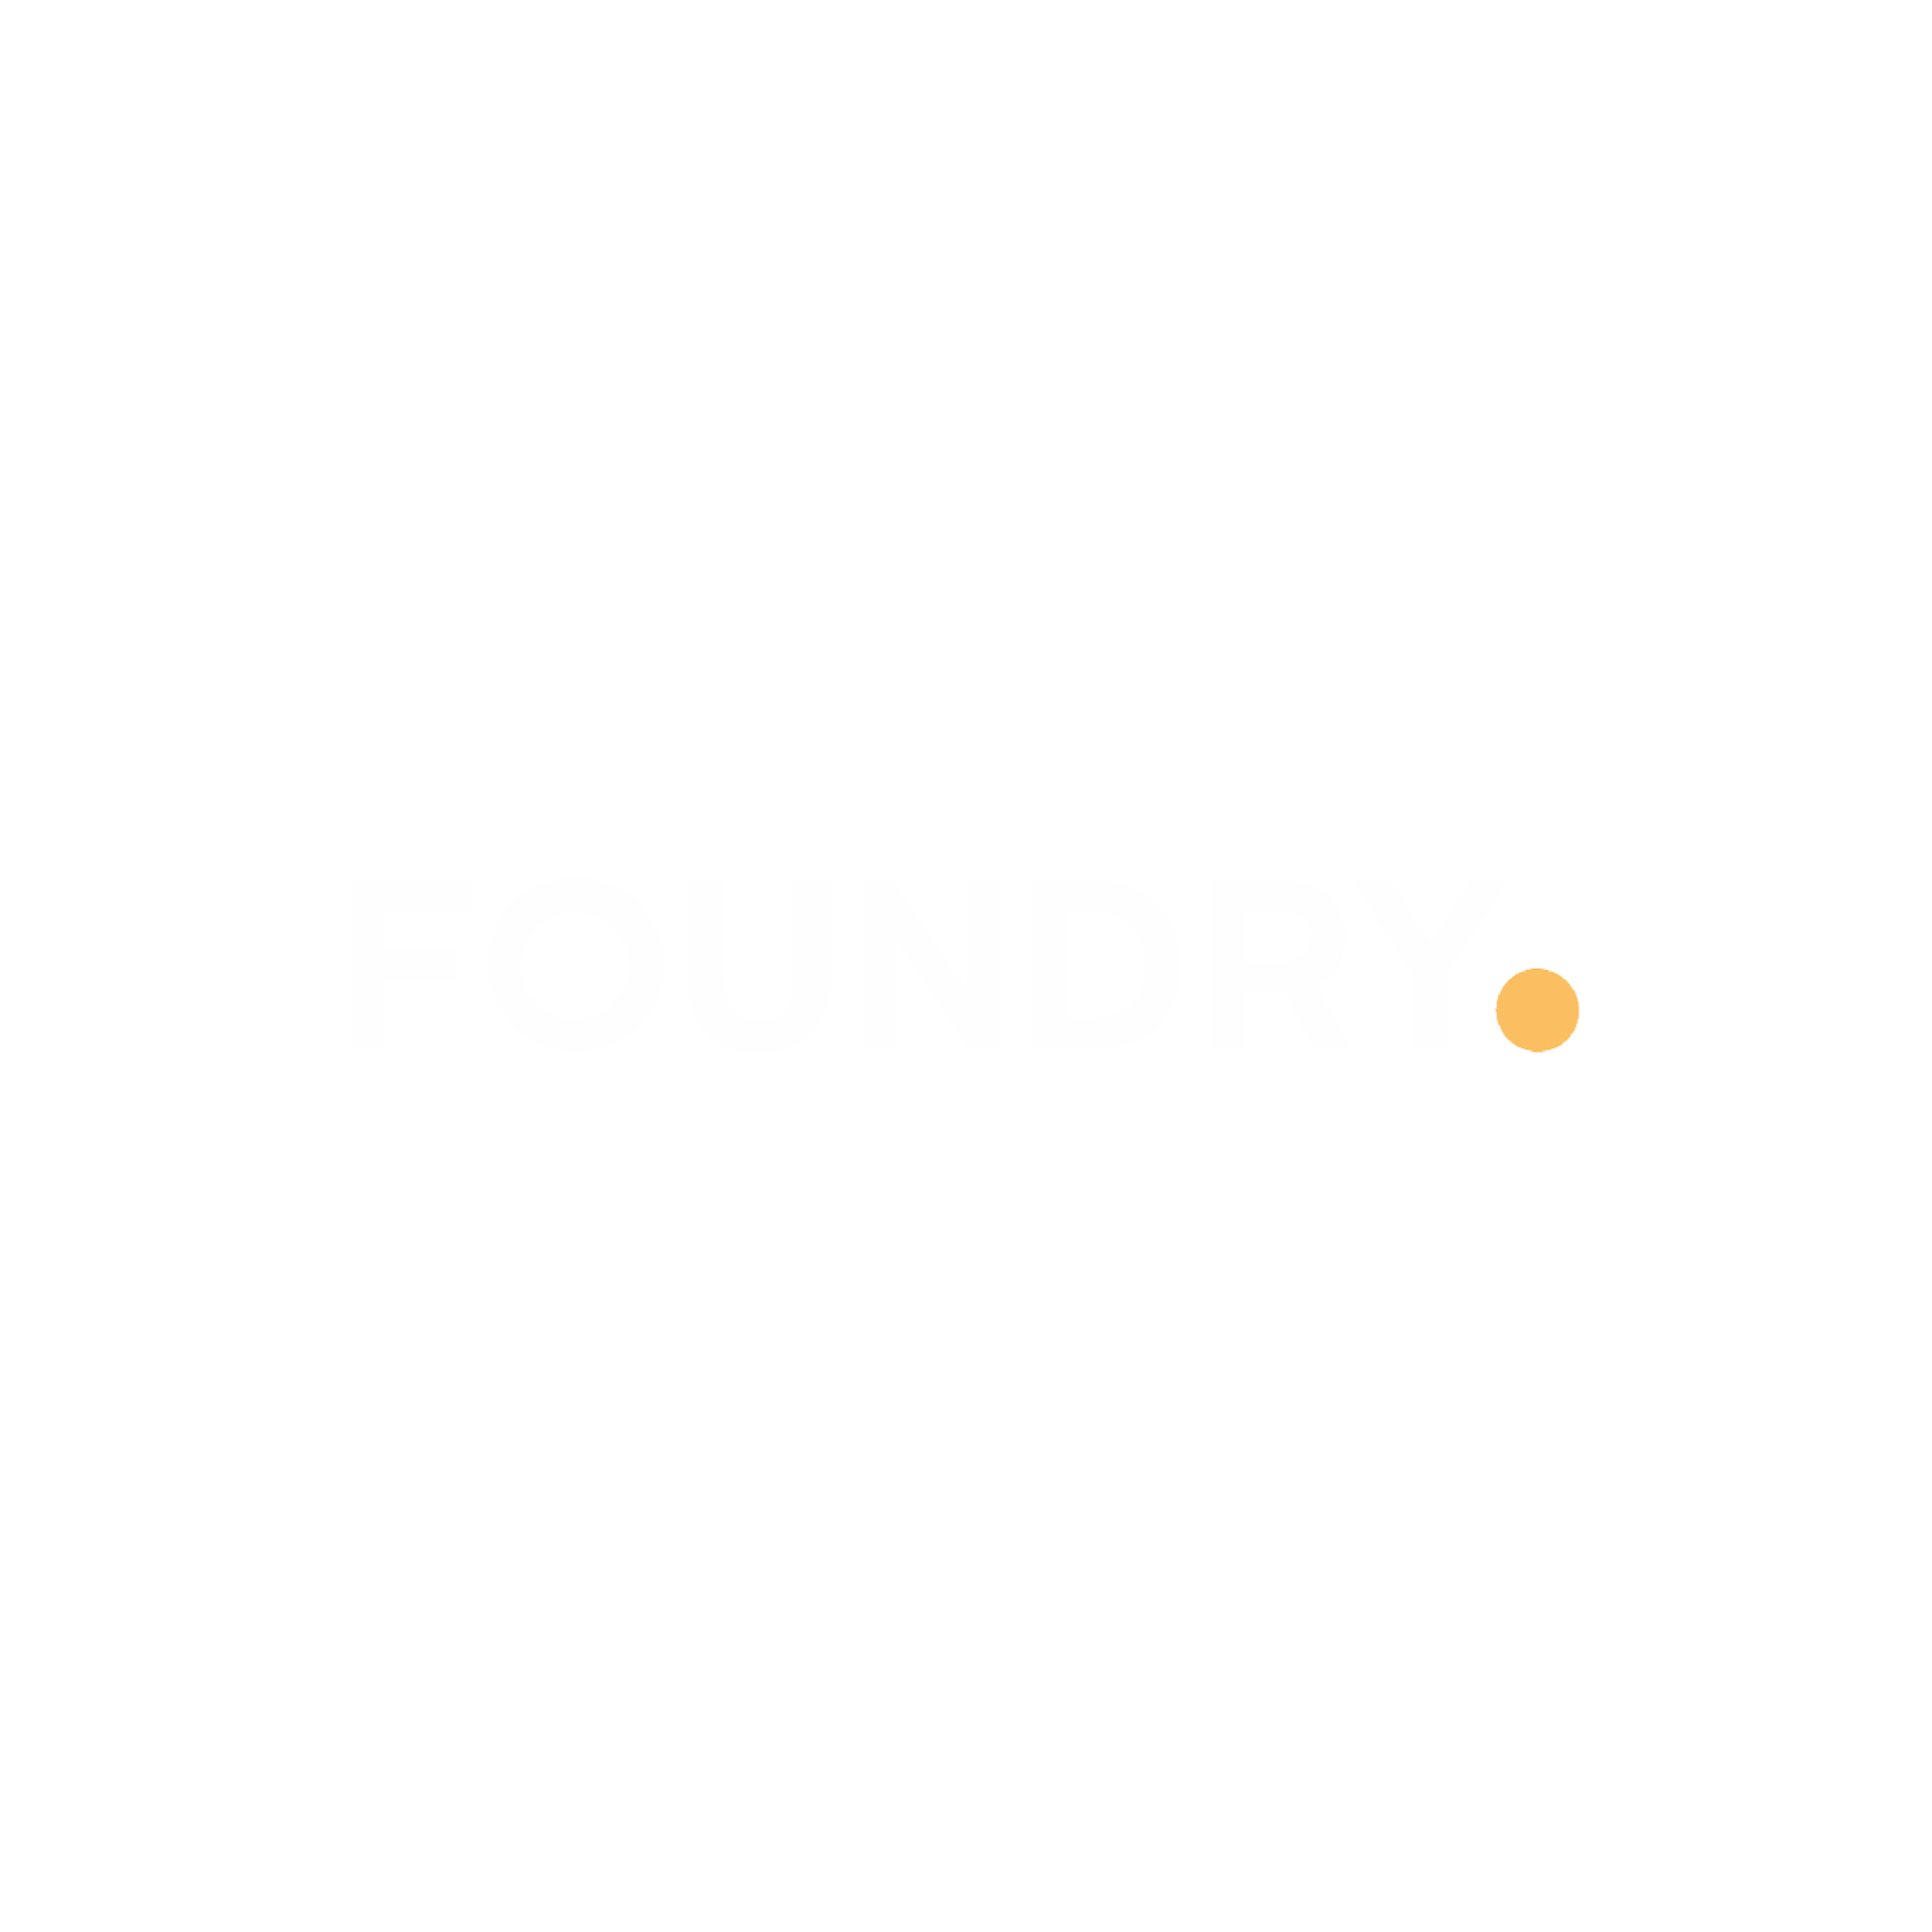 foundry_logo_white_transparent_4dea8.png